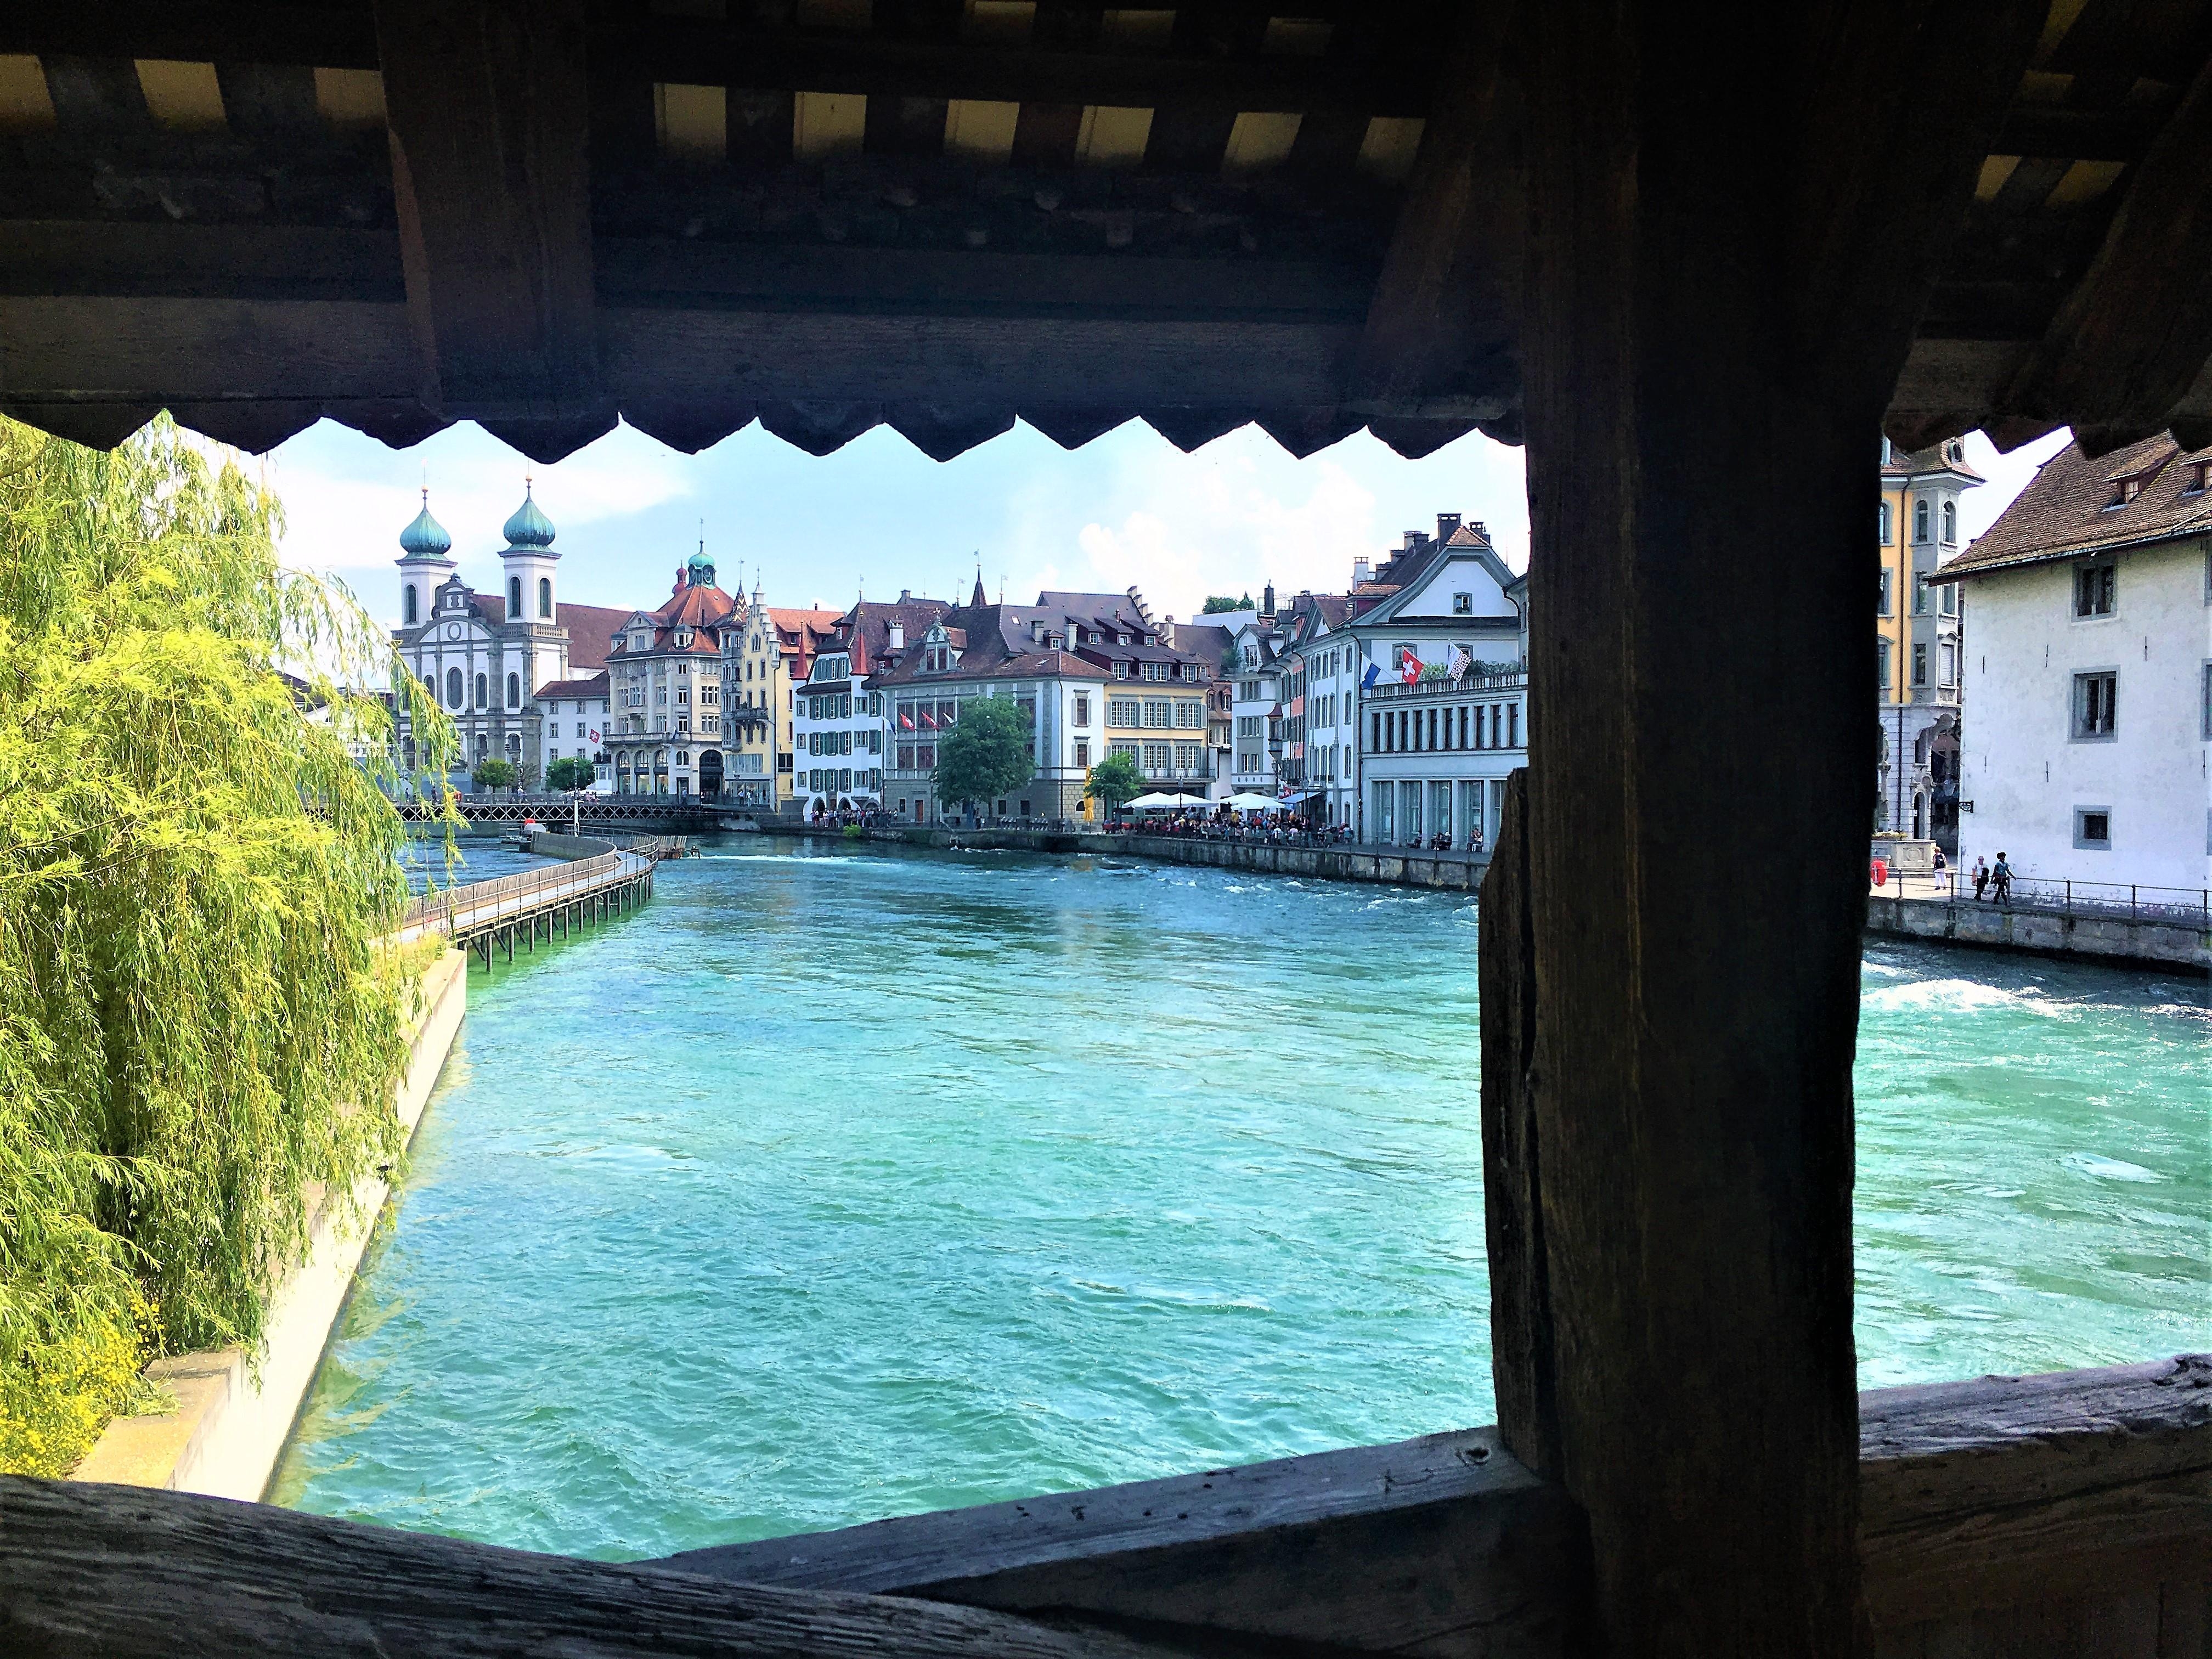 Traumhaftes Luzern
#Luzern Innenstadt# Sightseeing# #Städtetrip#